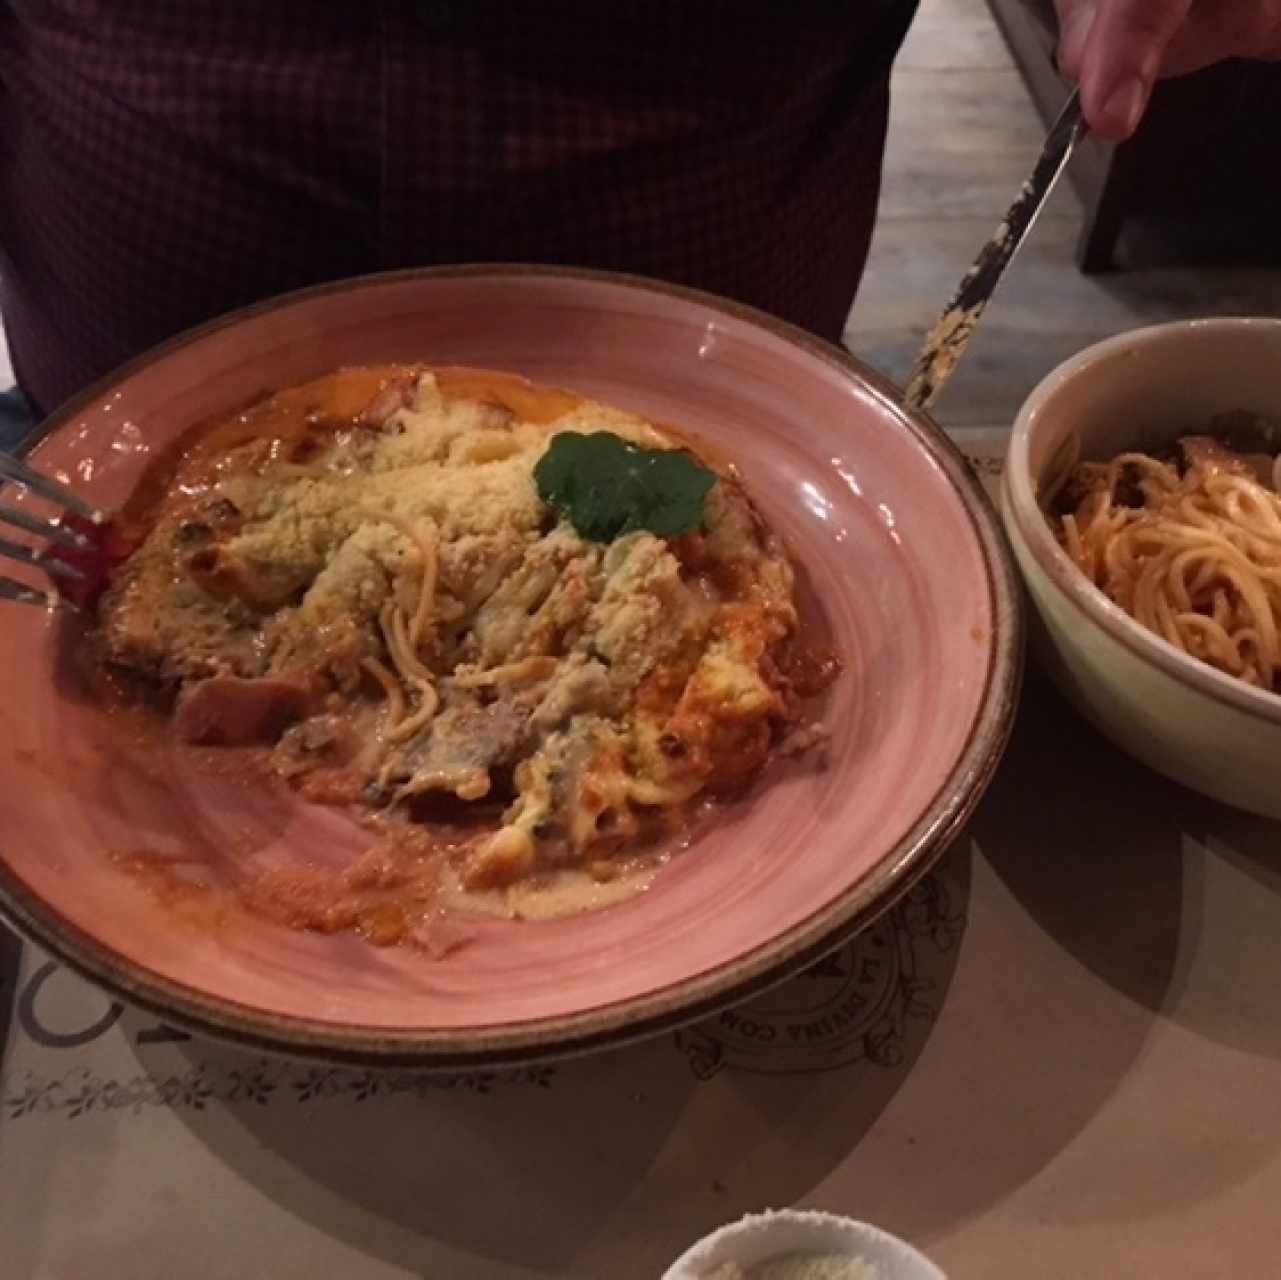  Cotoletta al parmigiano con pasta